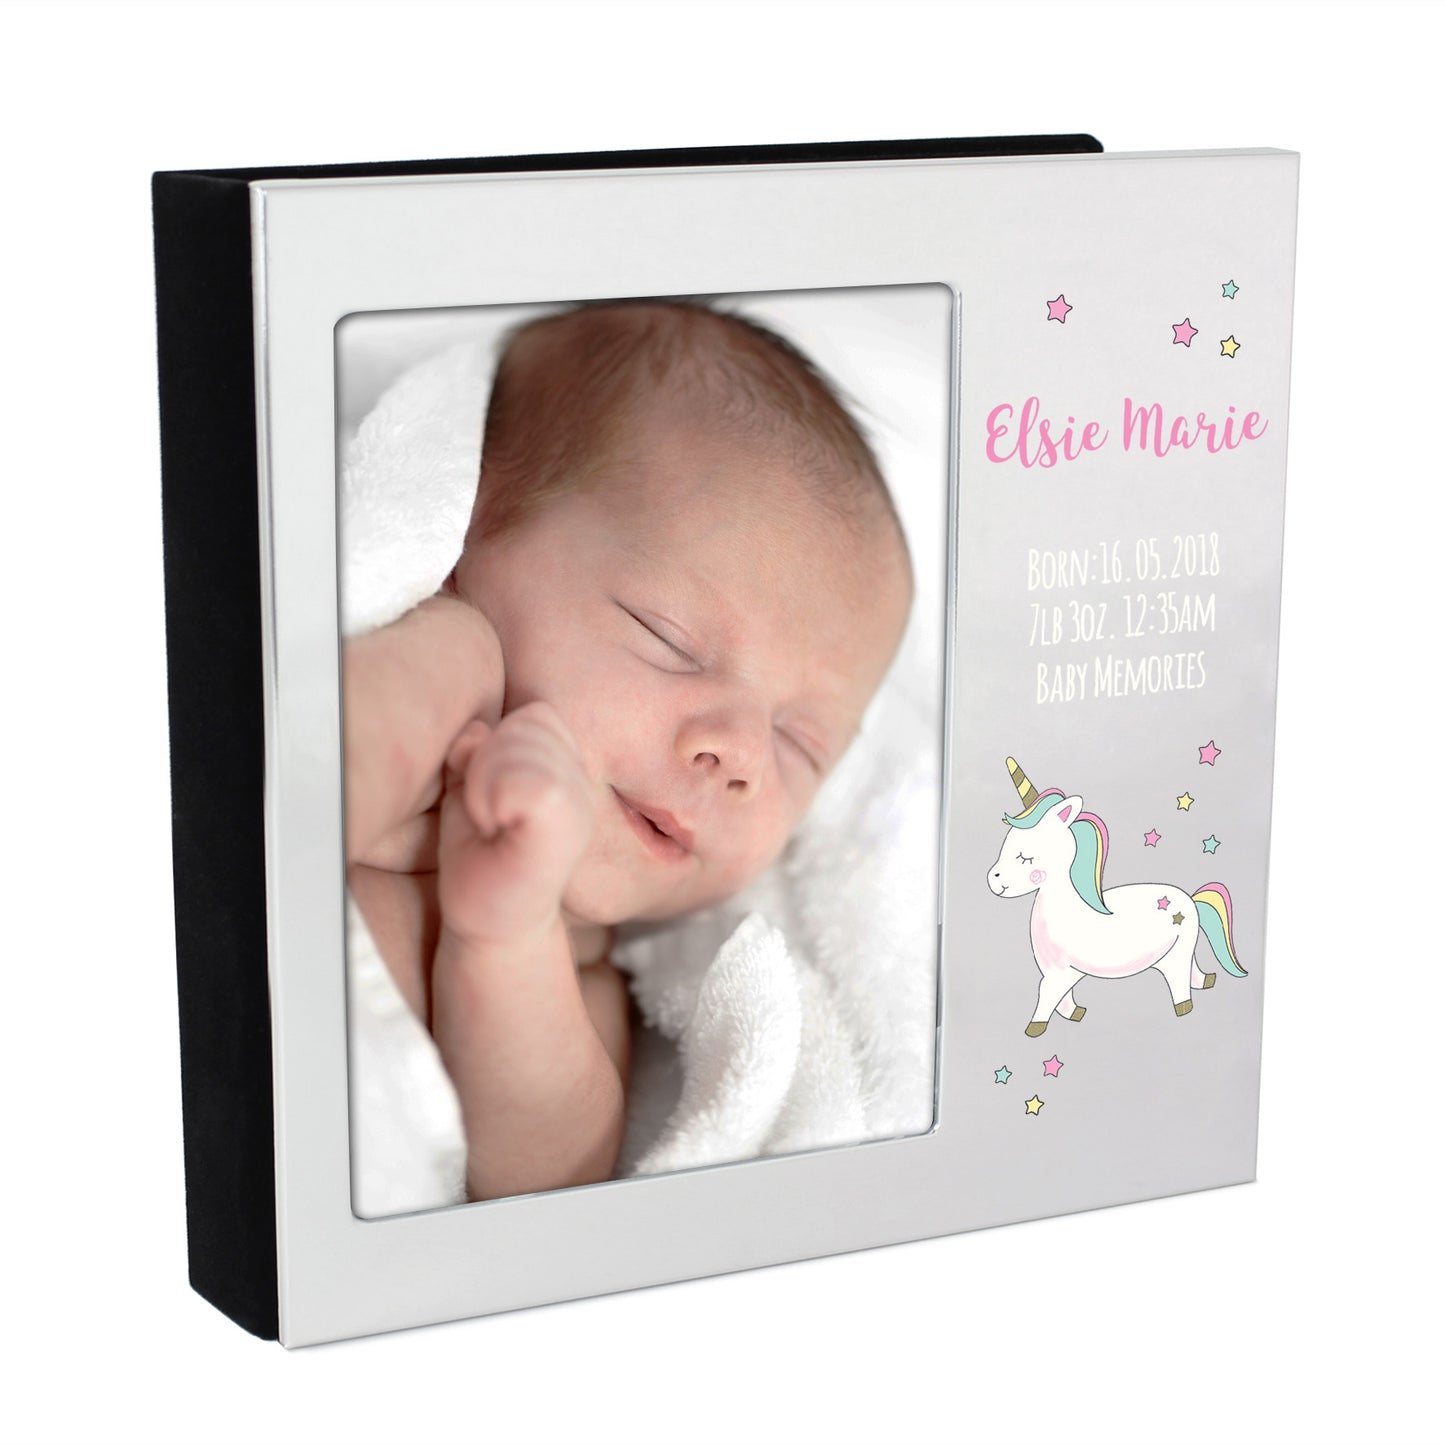 Personalised Baby Unicorn 4x6 Photo Frame Album - Personalise It!